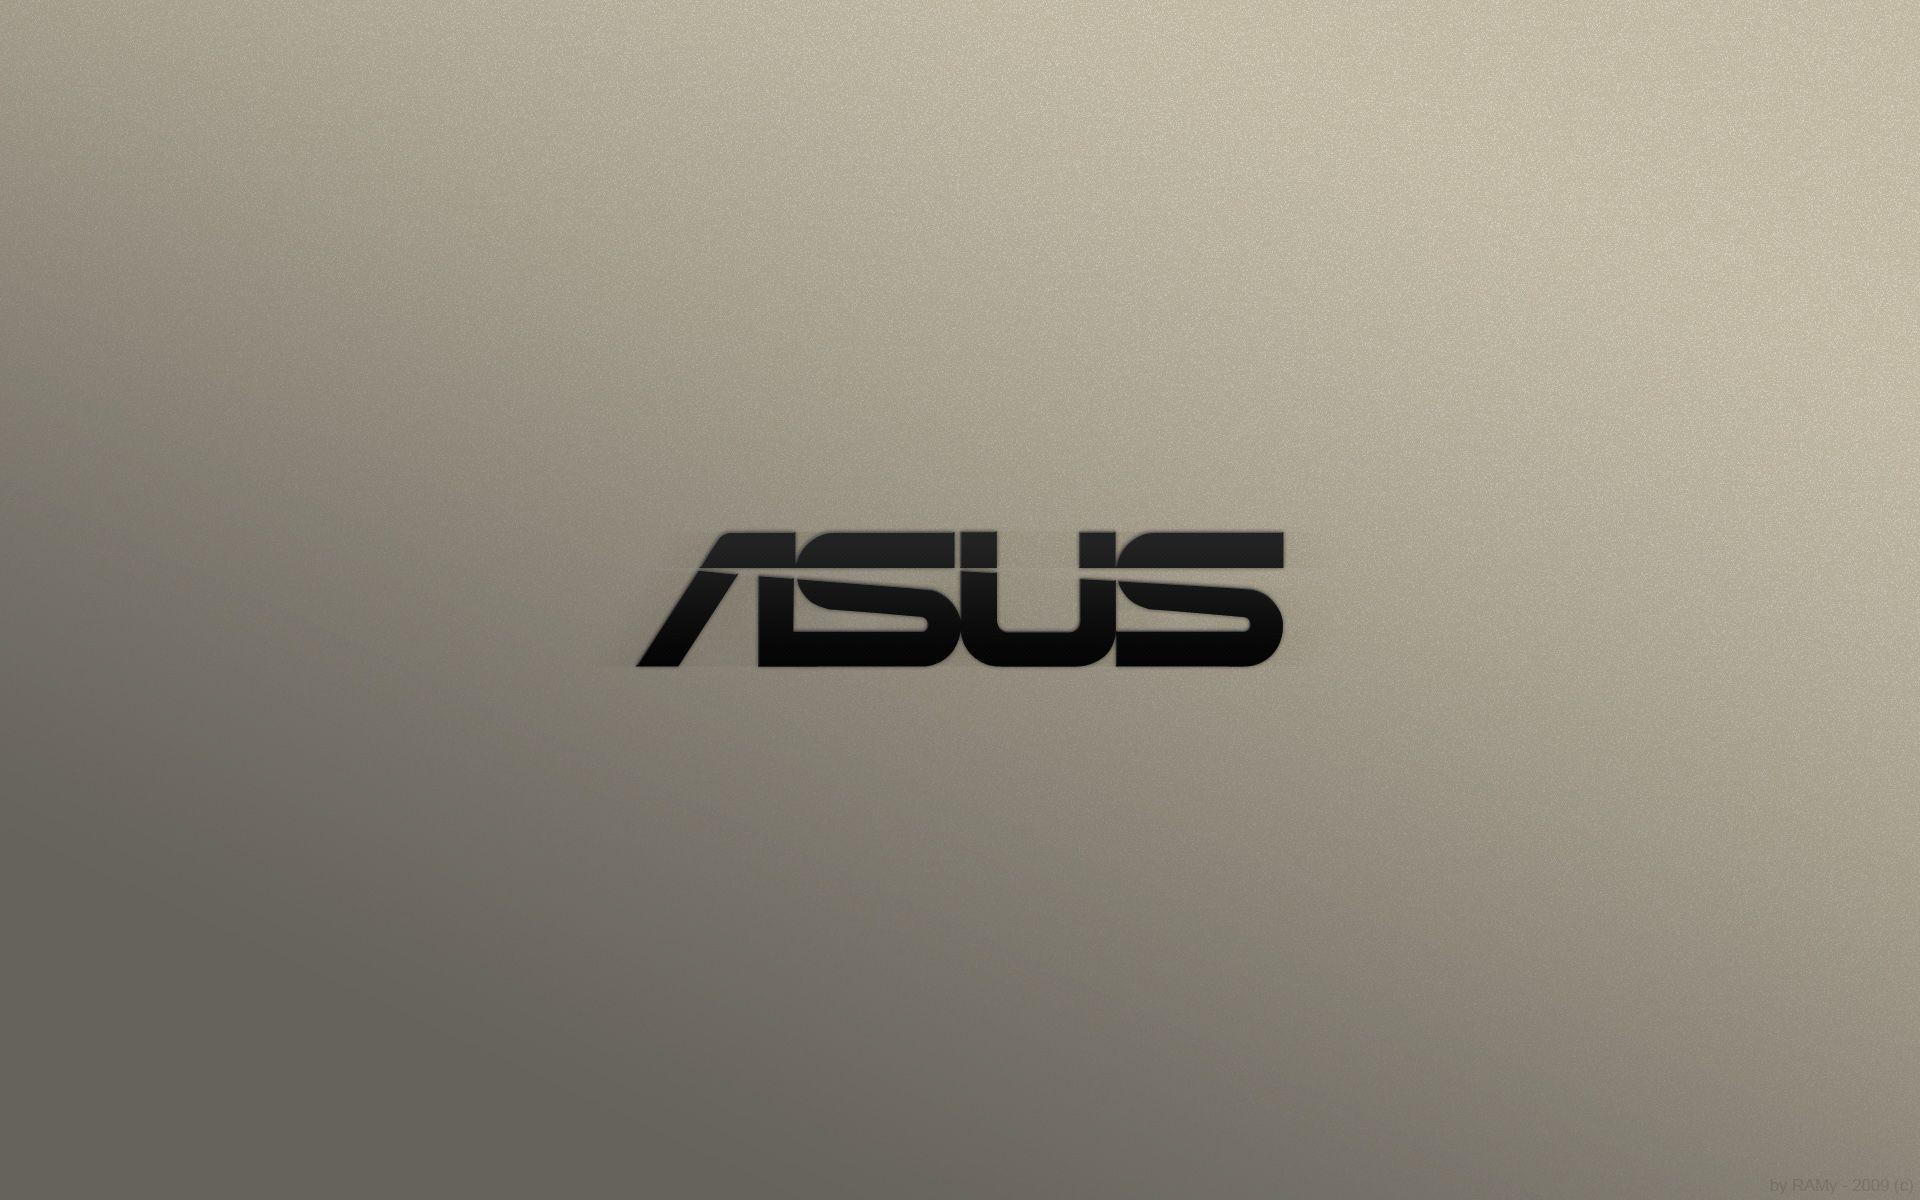 Asus Desktop Backgrounds (74+ images)